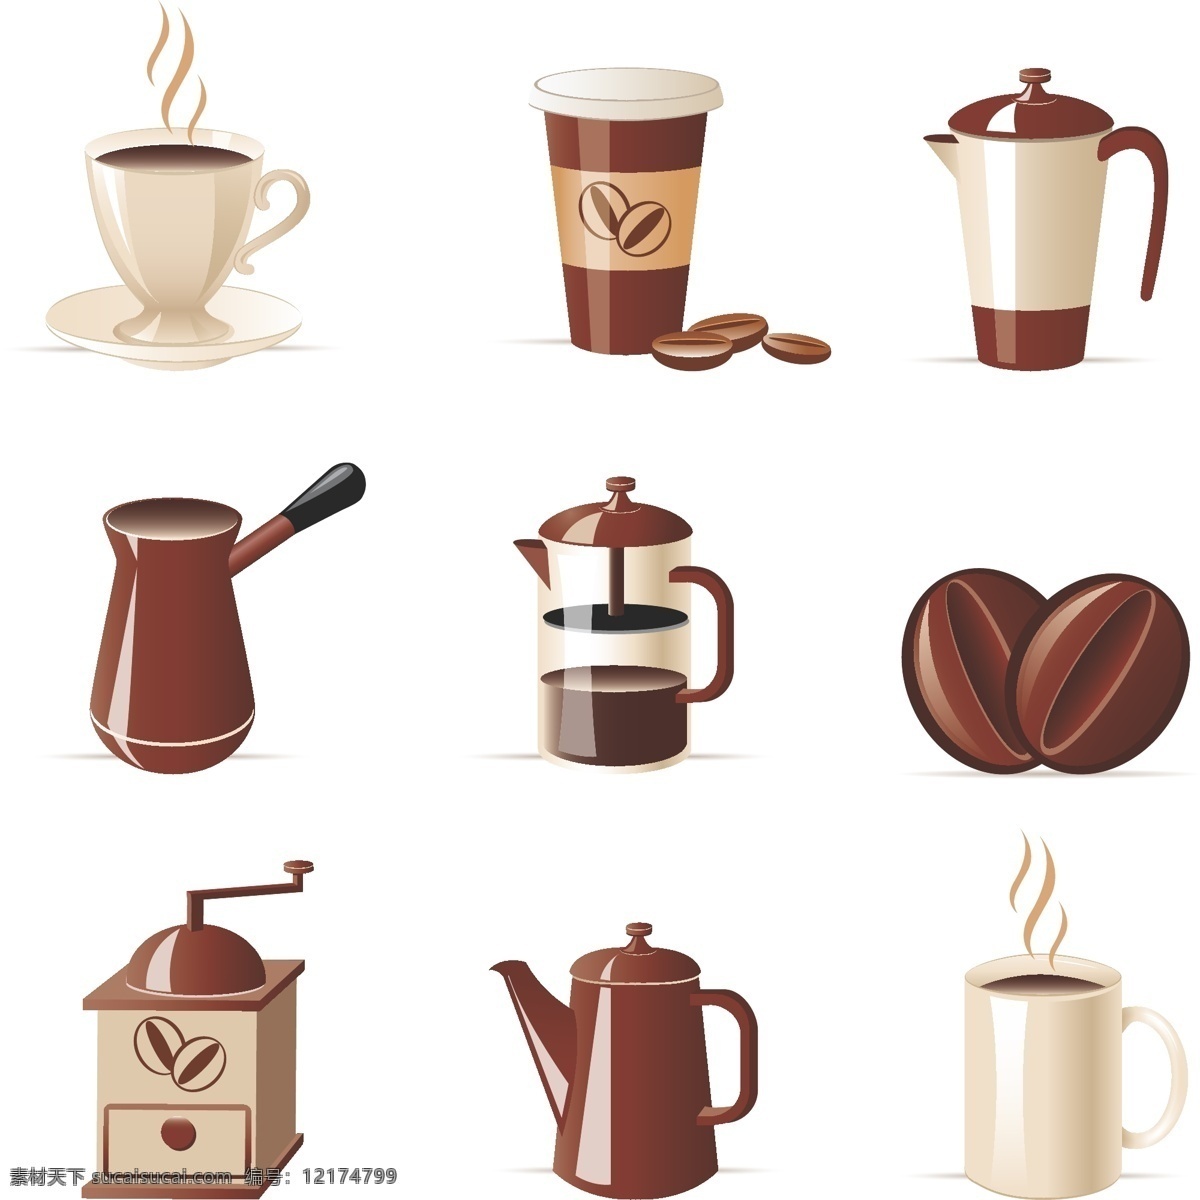 餐饮美食 咖啡 咖啡杯 咖啡豆 咖啡机 生活百科 用品 图标 矢量 模板下载 咖啡用品图标 矢量图 日常生活